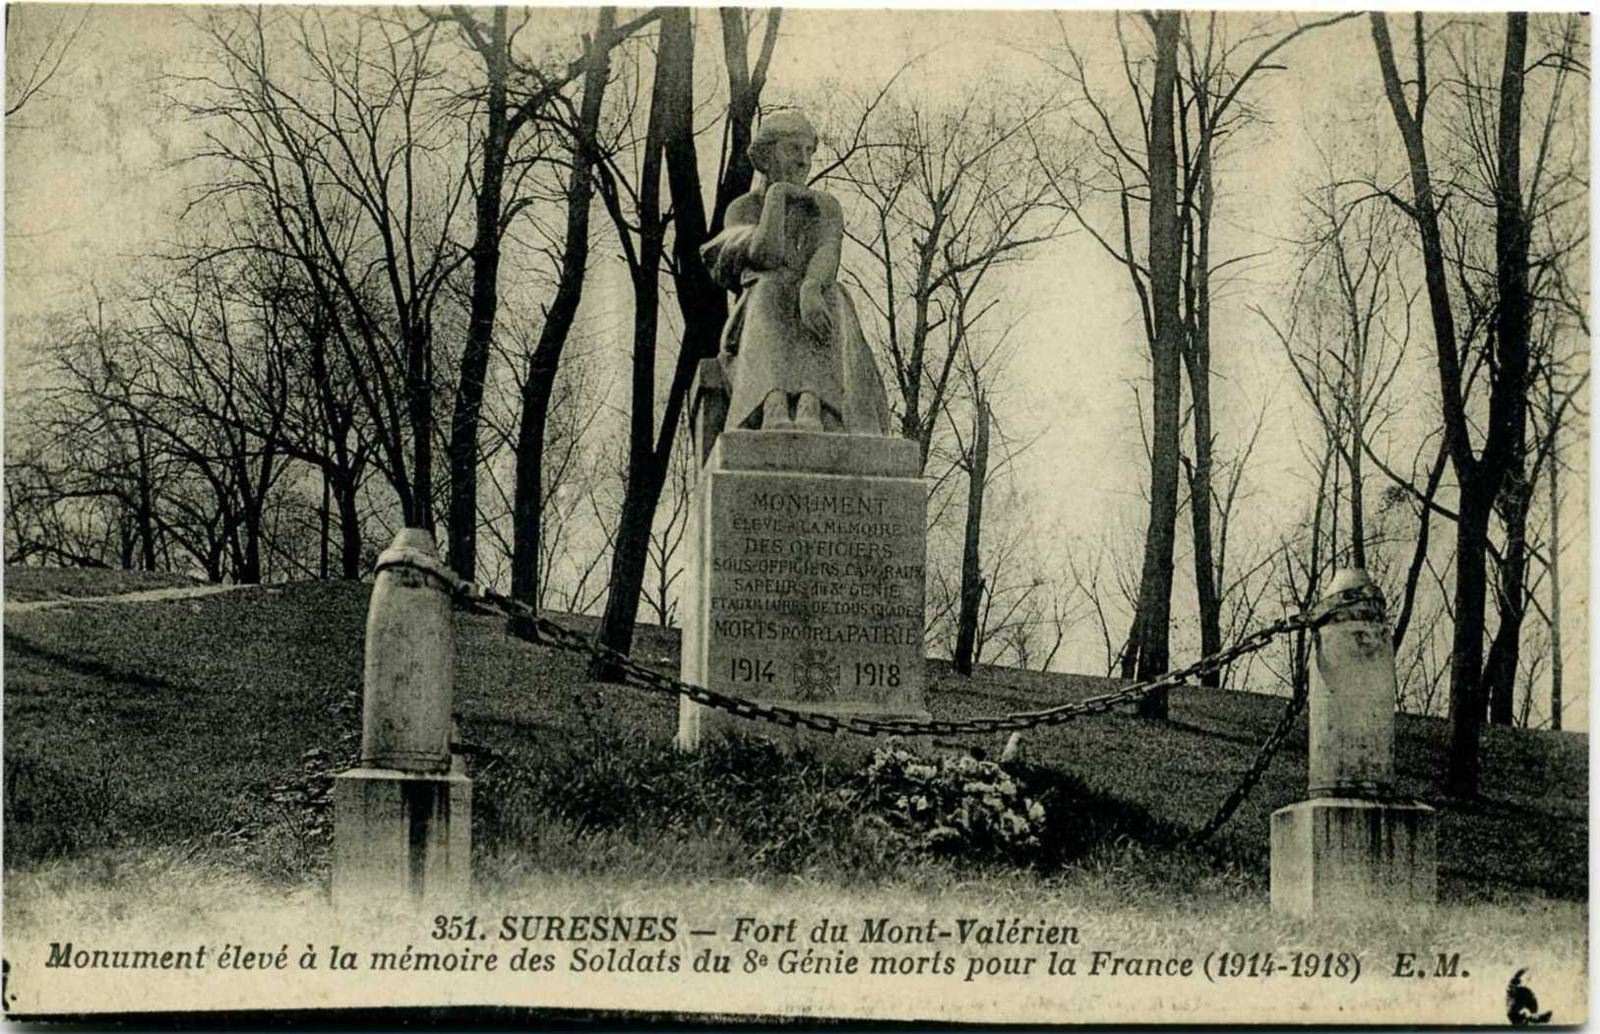 Suresnes - Fort du Mont-Valérien - Monument élevé à la mémoire des Soldats du 8e Génie morts pour la France (1914-1918)